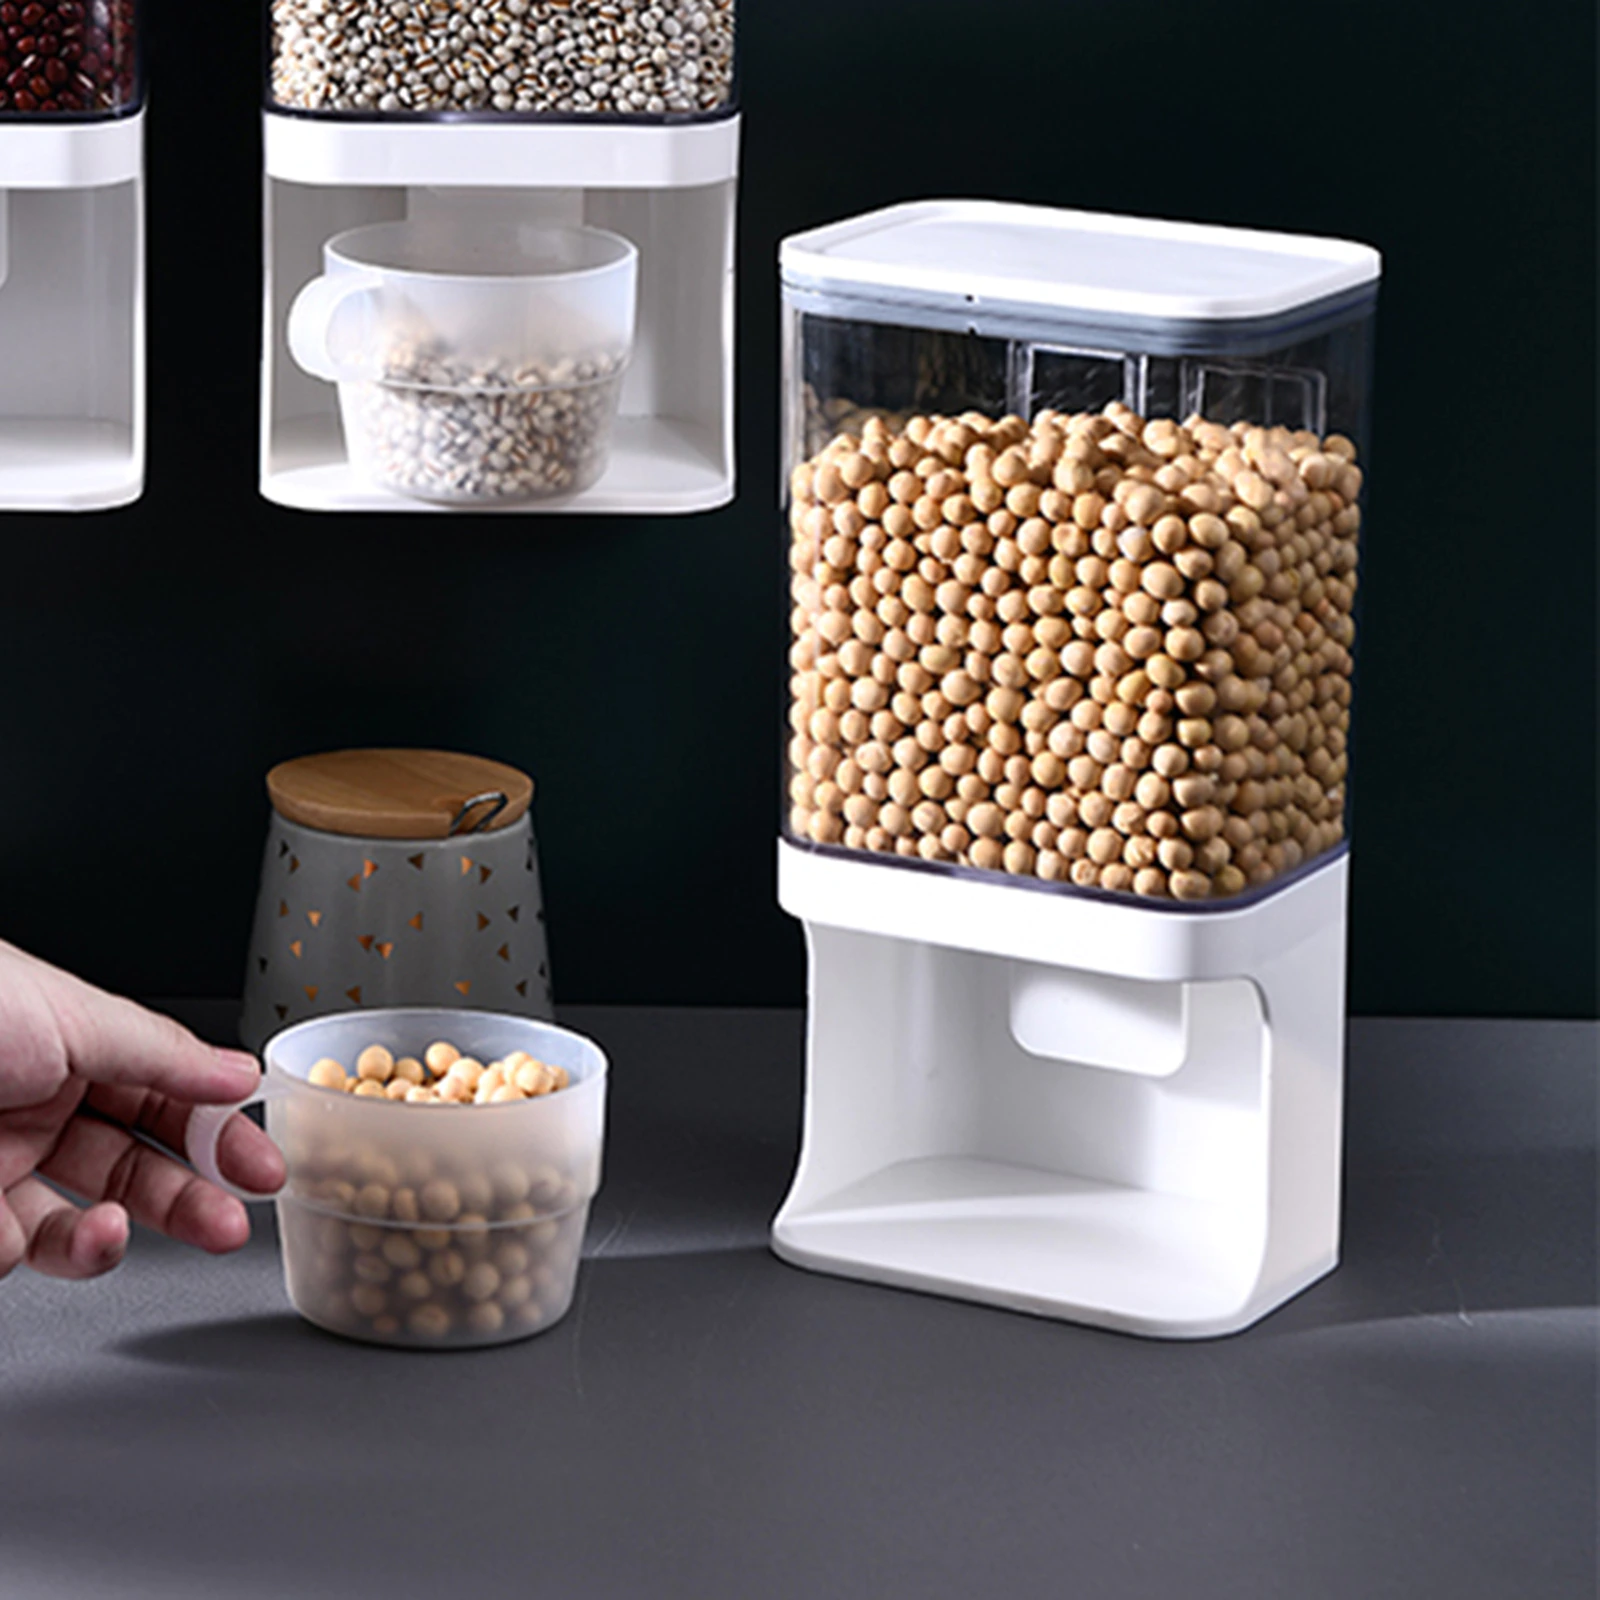 Rectangular Cereal Dispenser 1.2 Liter